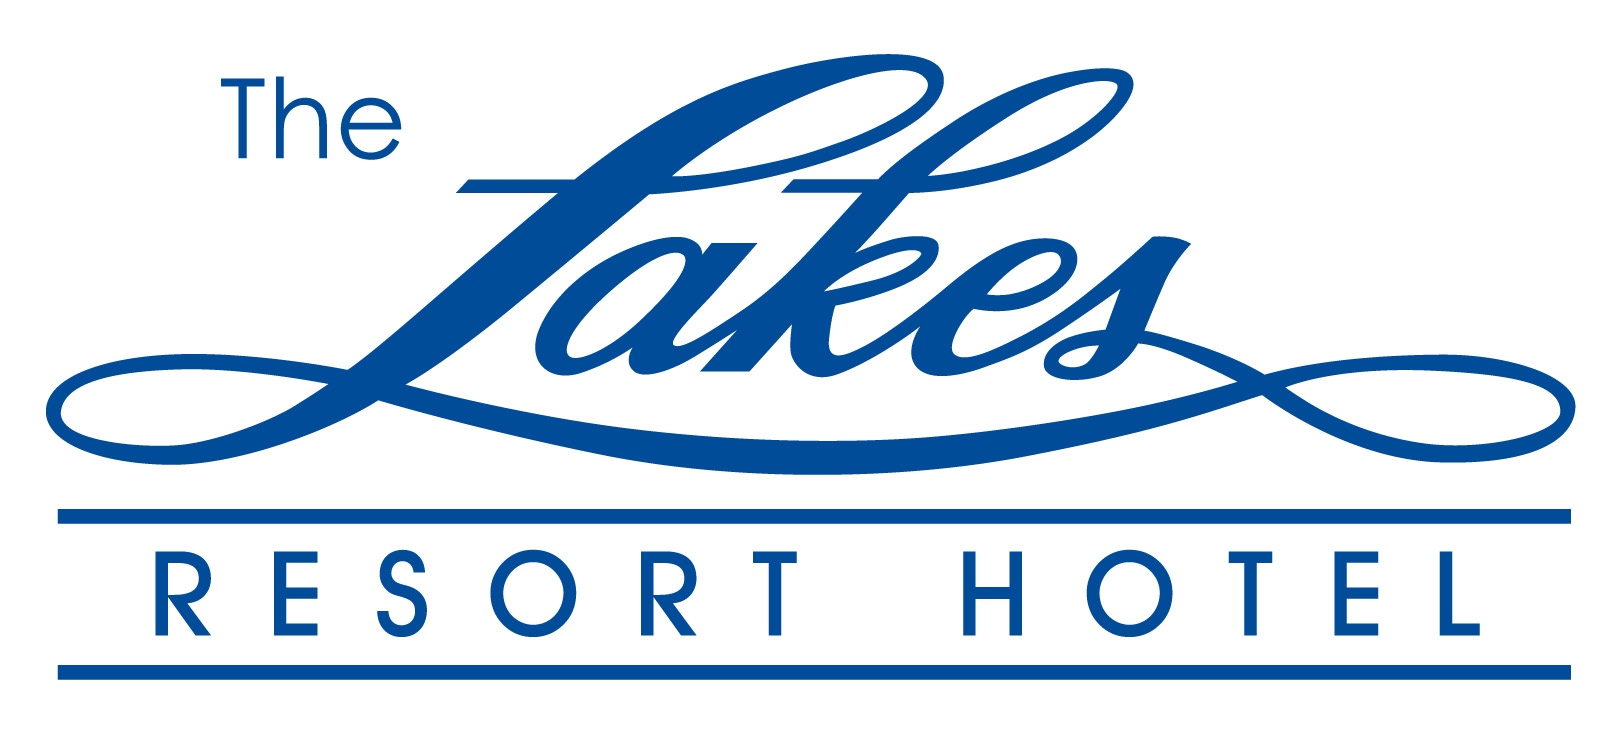 Lakes Resort Hotel - St Kilda Accommodation